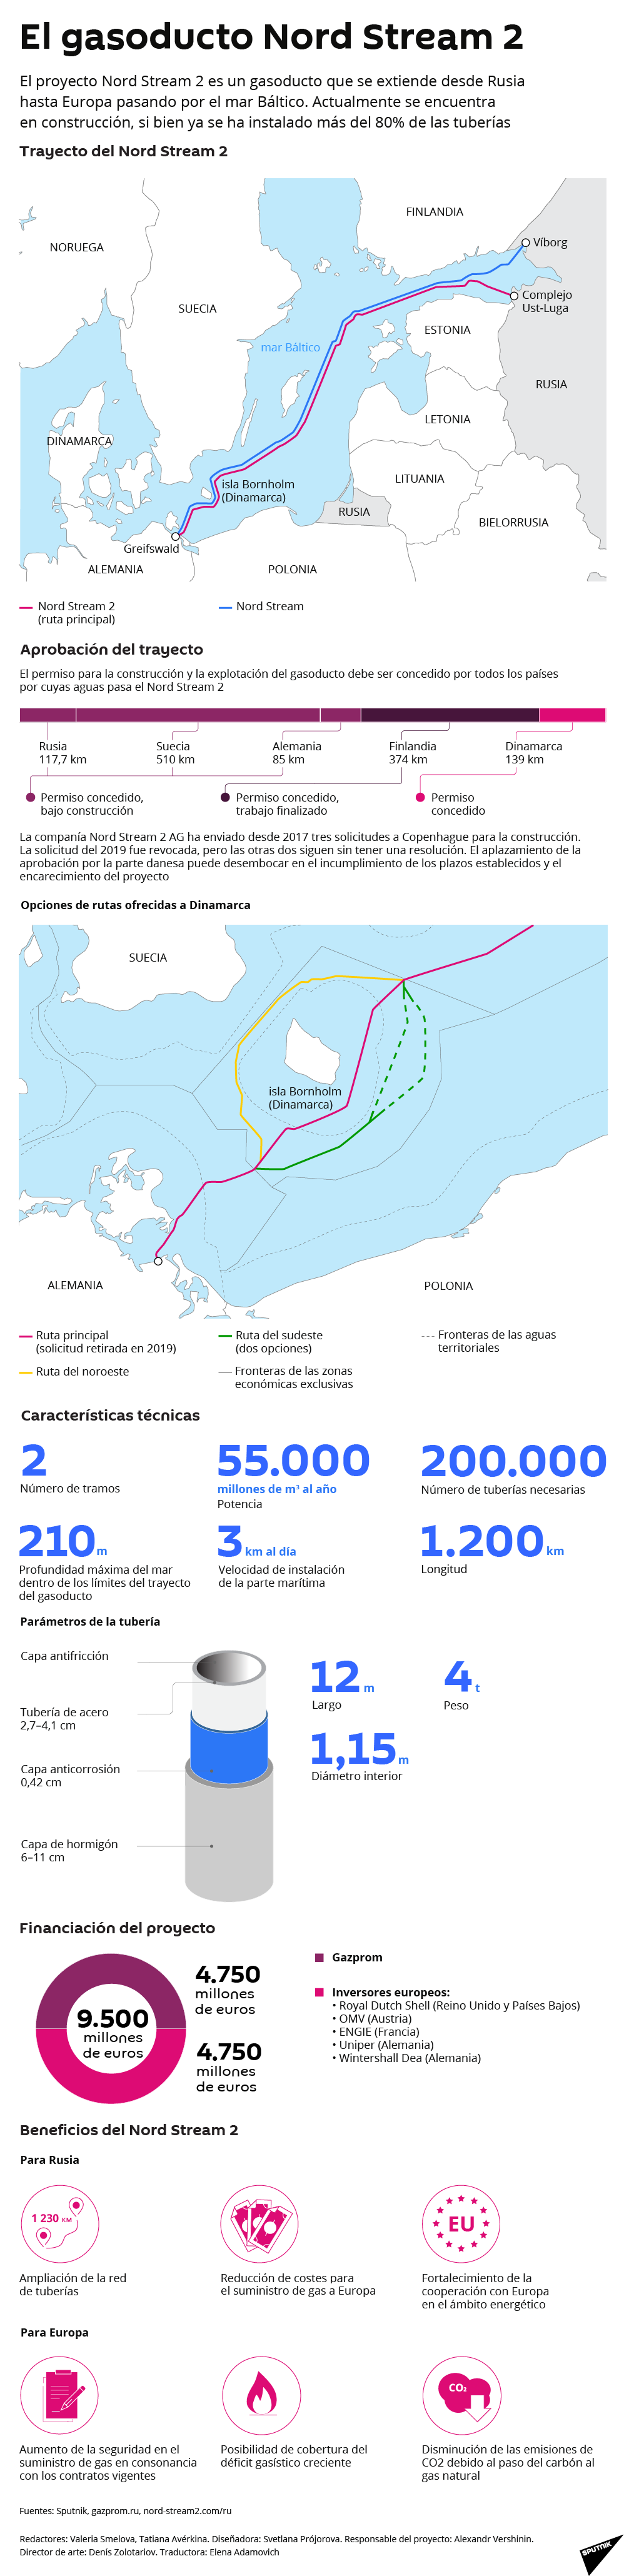 El gasoducto Nord Stream 2, al detalle - Sputnik Mundo